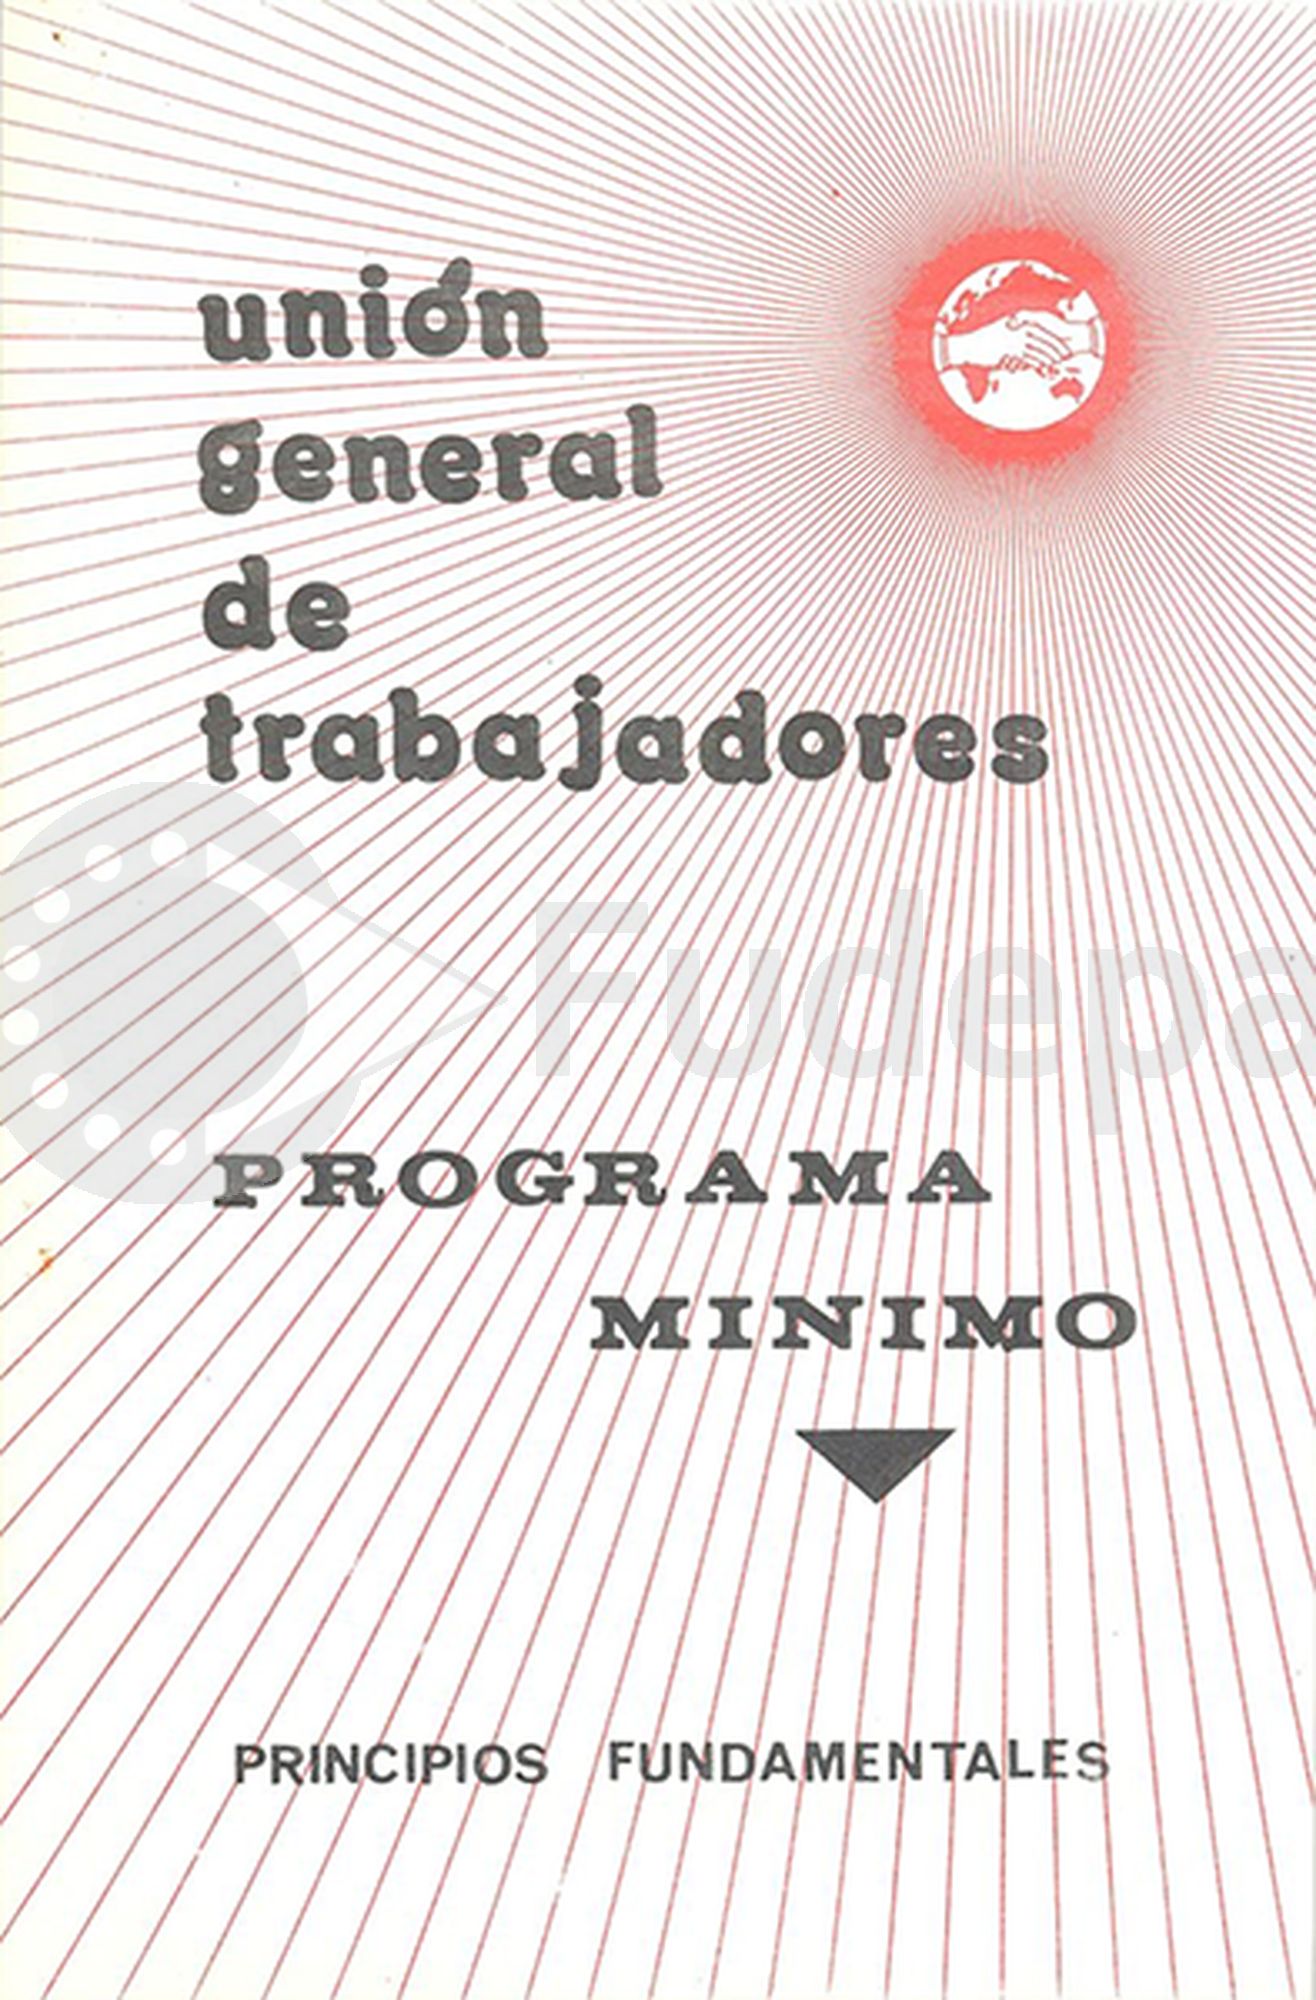 Unión General de Trabajadores. Programa Mínimo. Principios Fundamentales. Aprobado en octubre 1974 [publicado en 1976]. Donado por Manuel Peñalosa. FUDEPA. AHUGT-A: C_12876/9